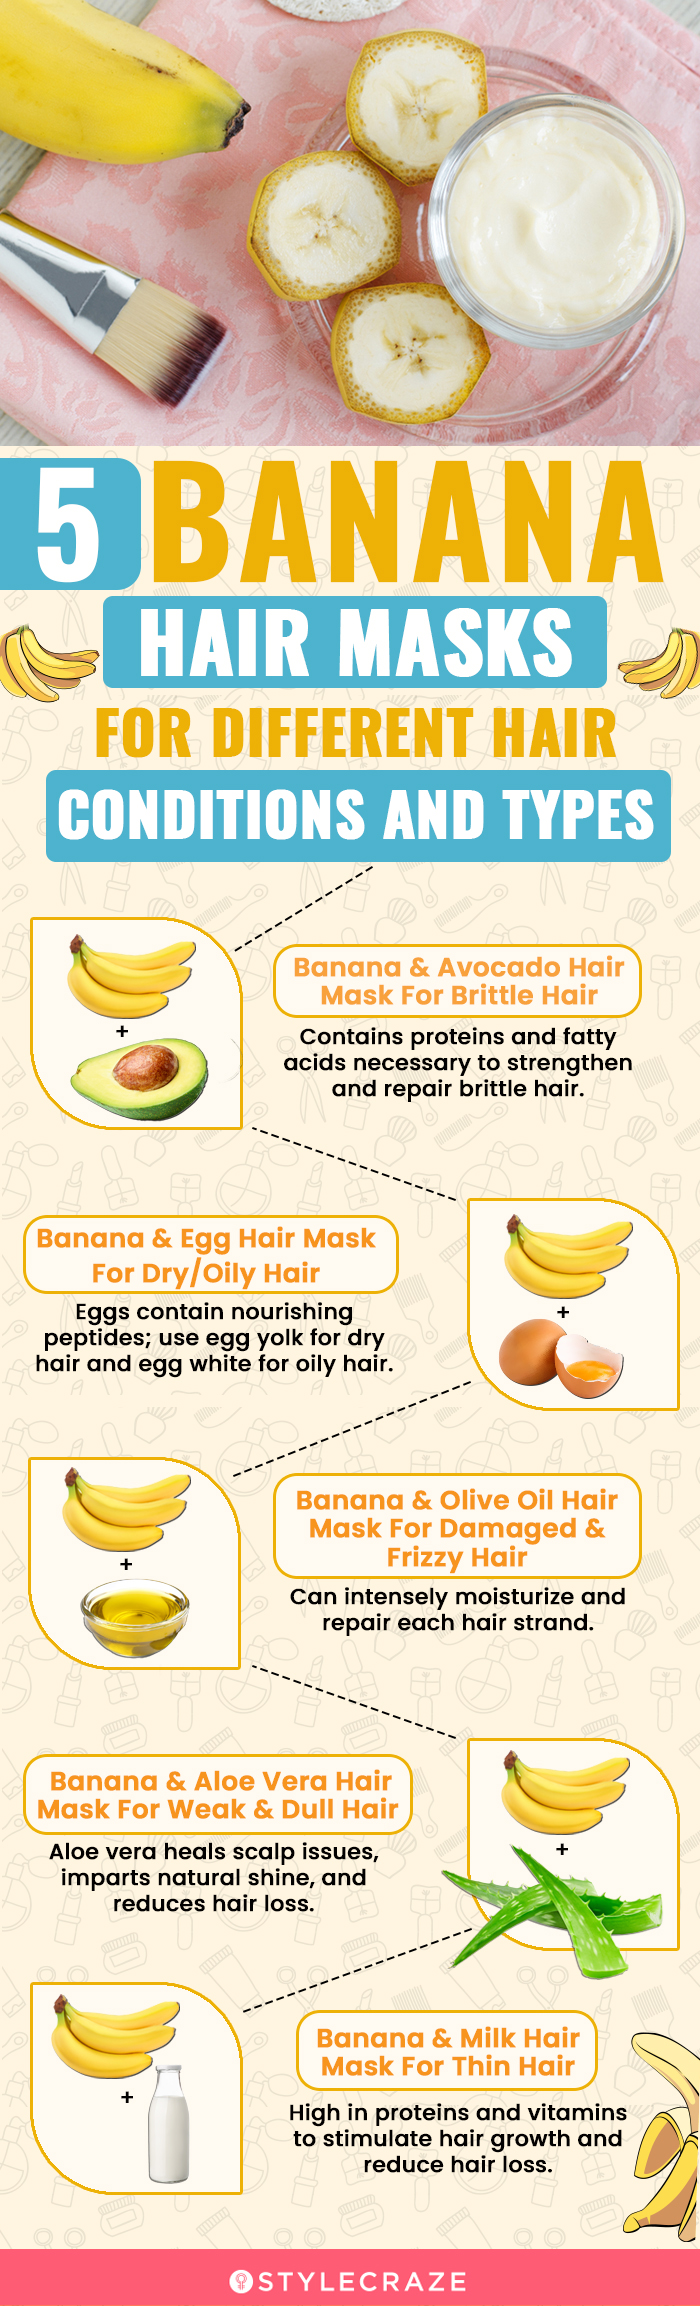 11 DIY Banana Hair Masks For All Hair Types: Benefits + Recipes